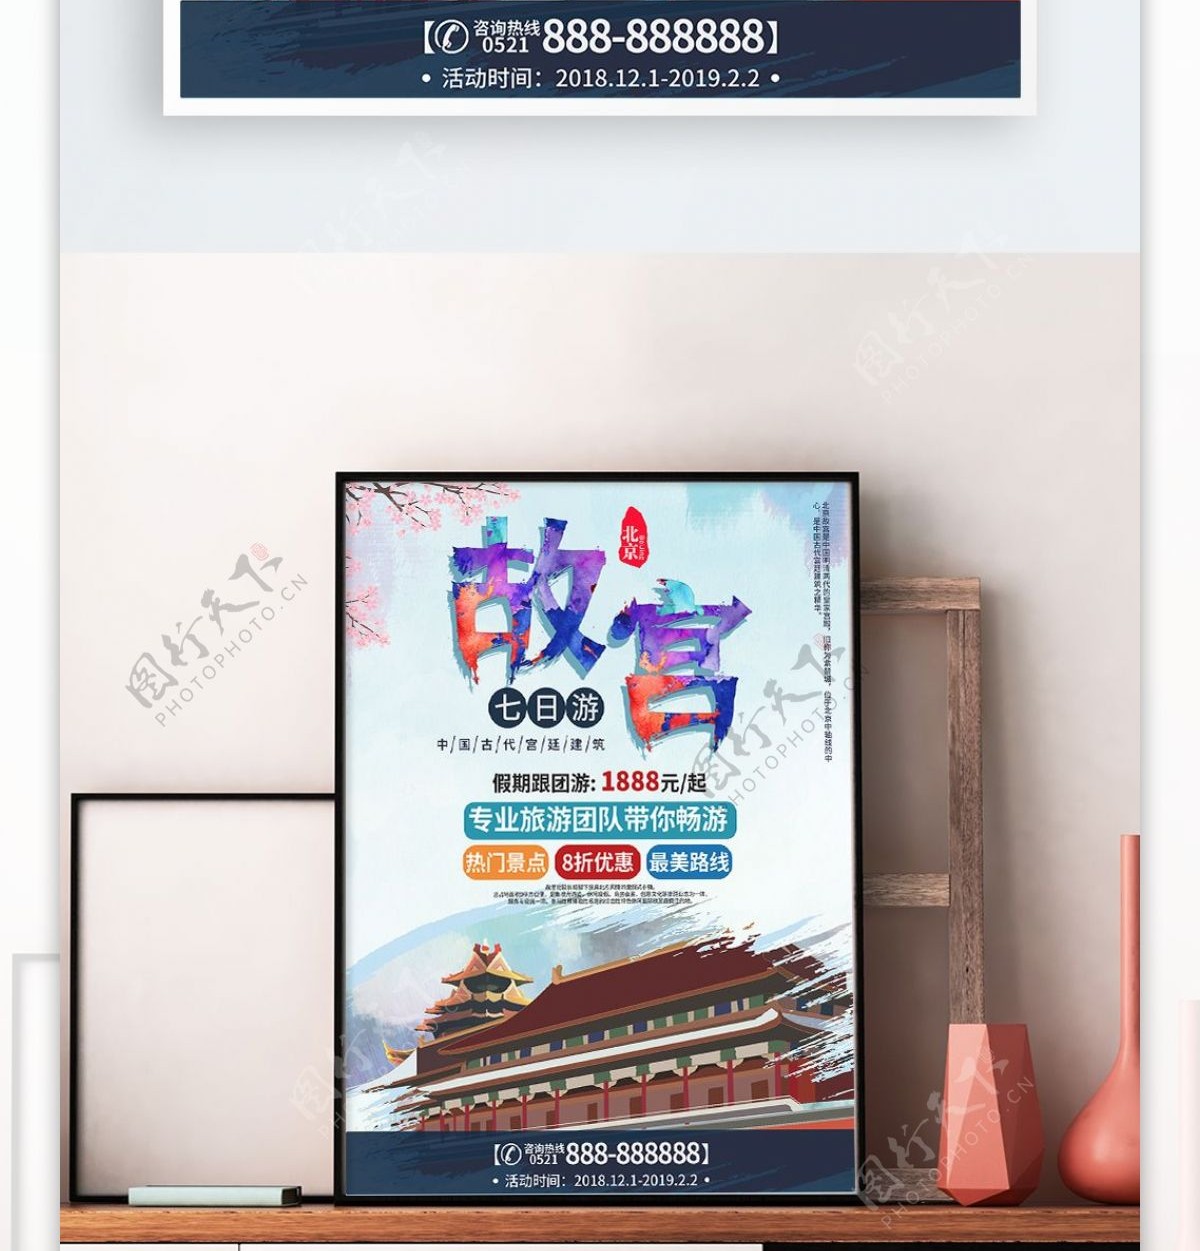 故宫宣传促销旅游海报